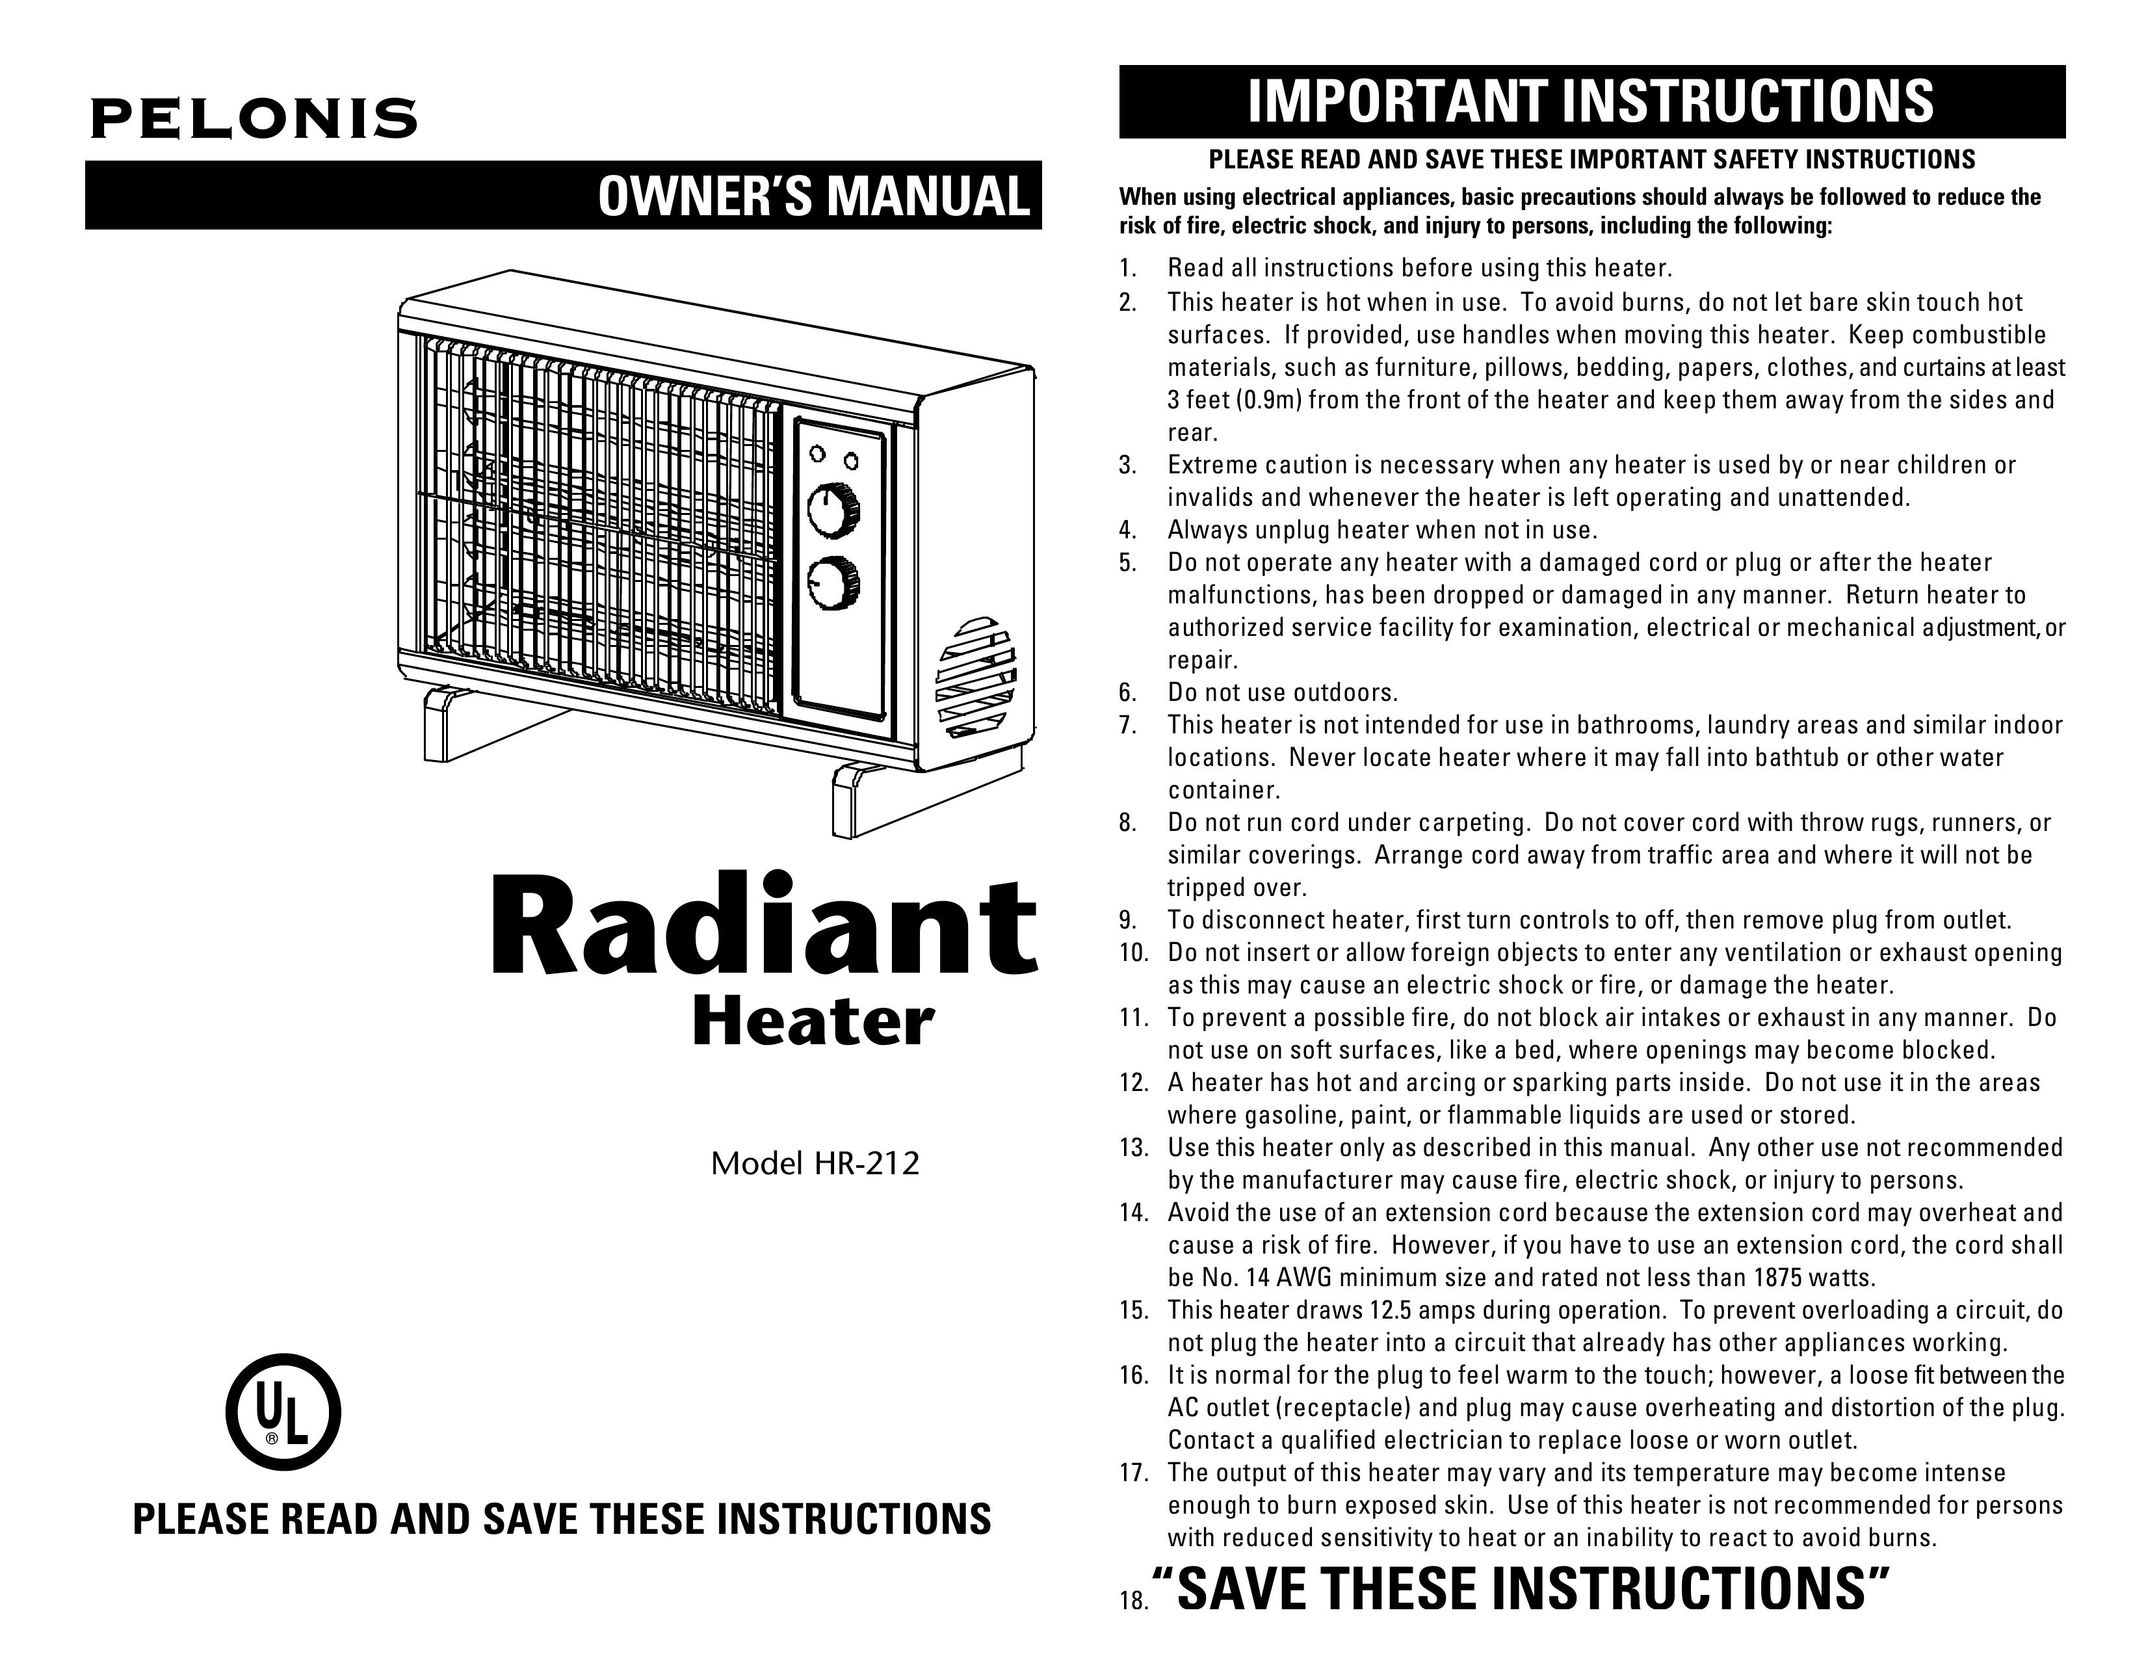 Casio HR-212 Electric Heater User Manual